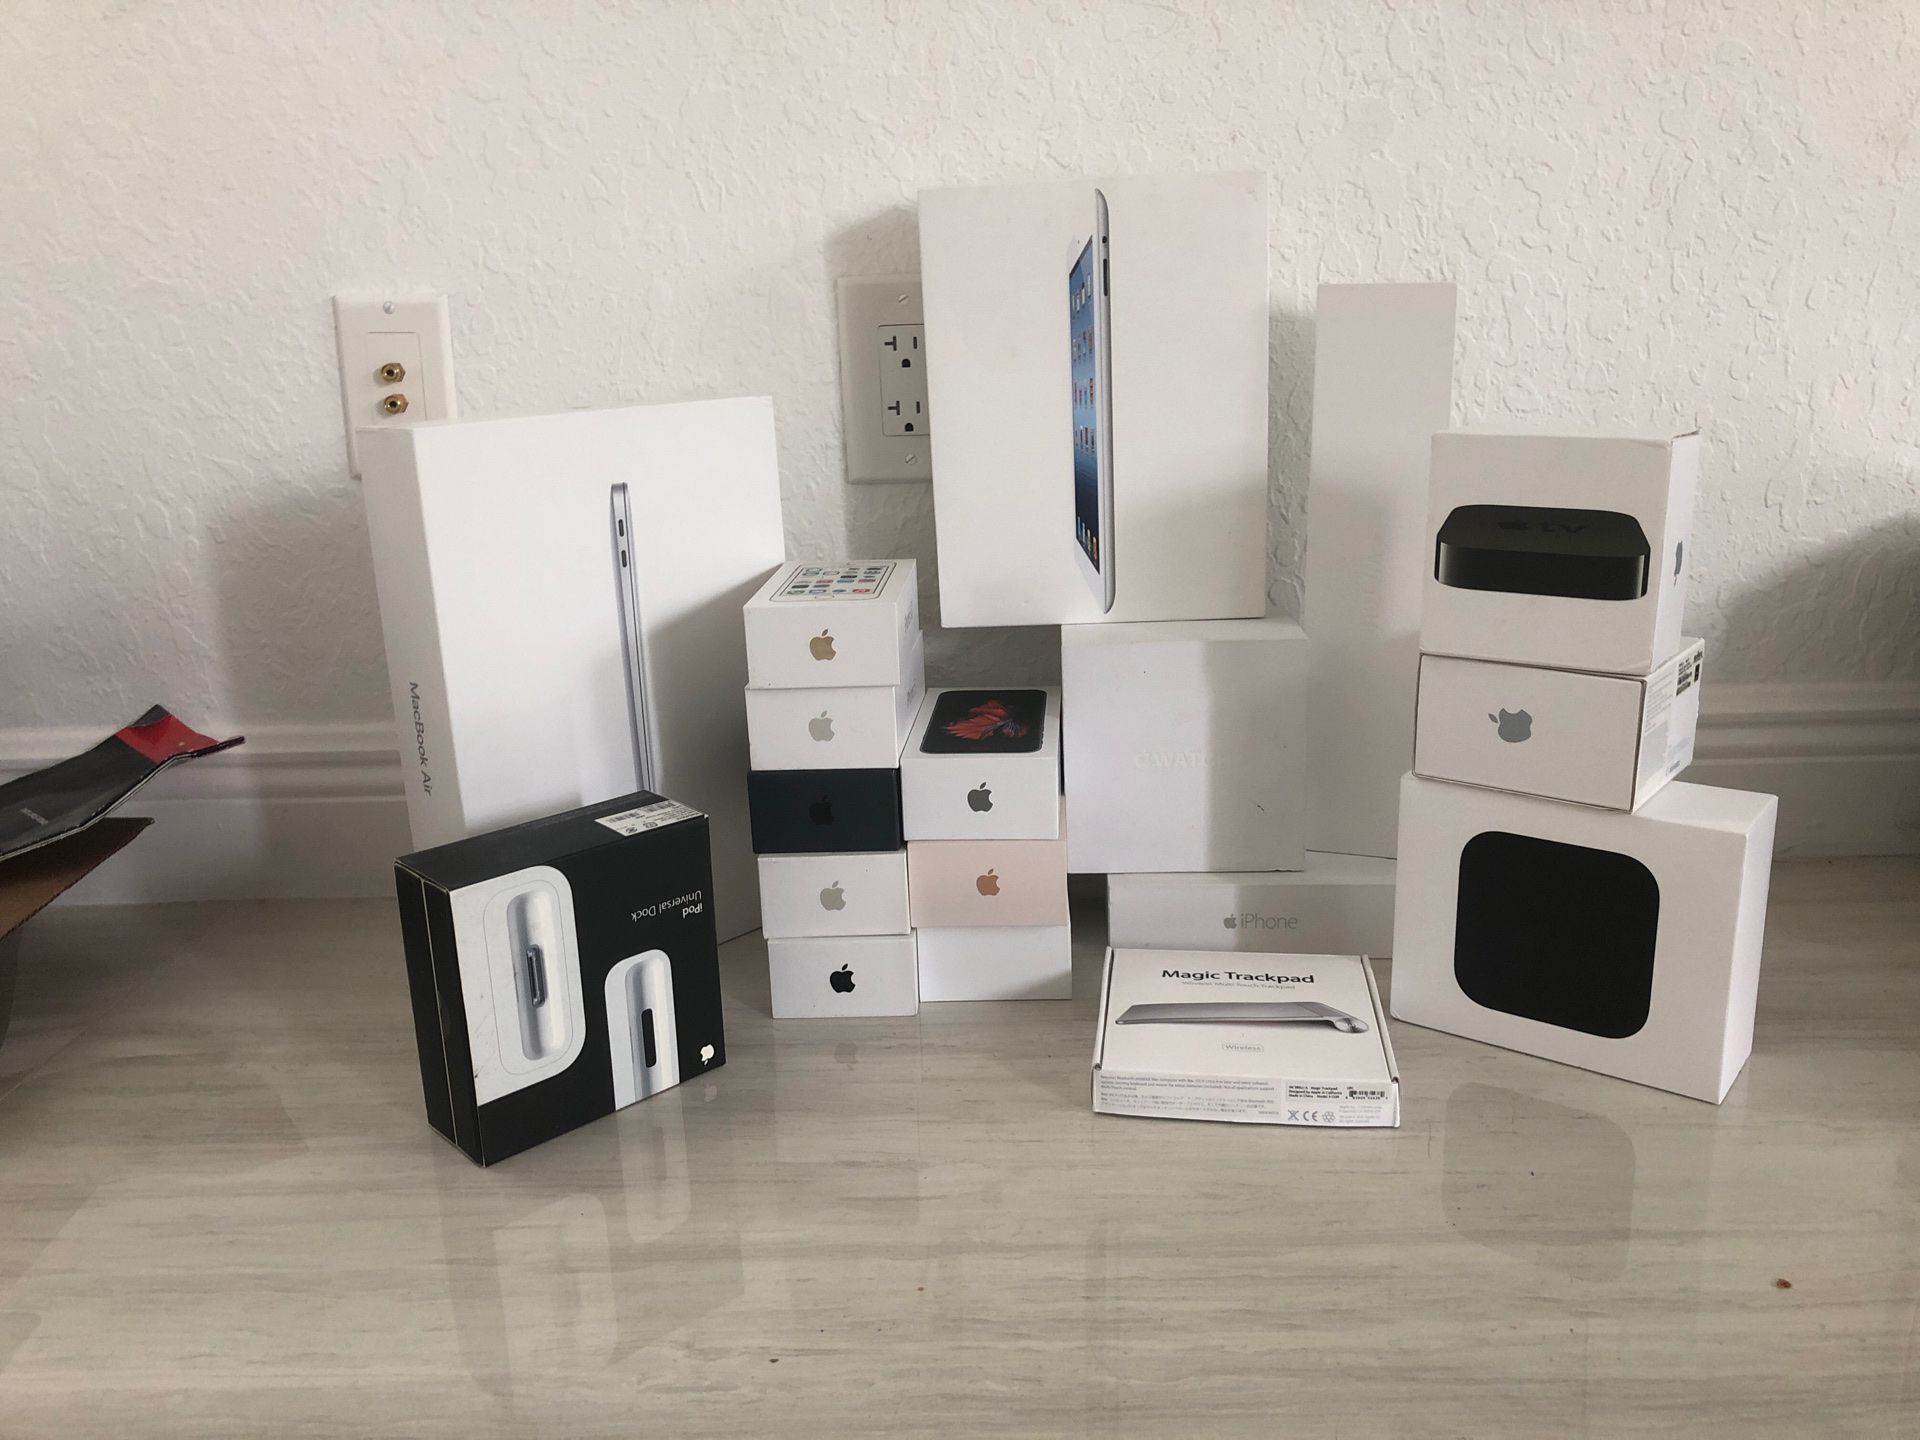 Apple empty boxes